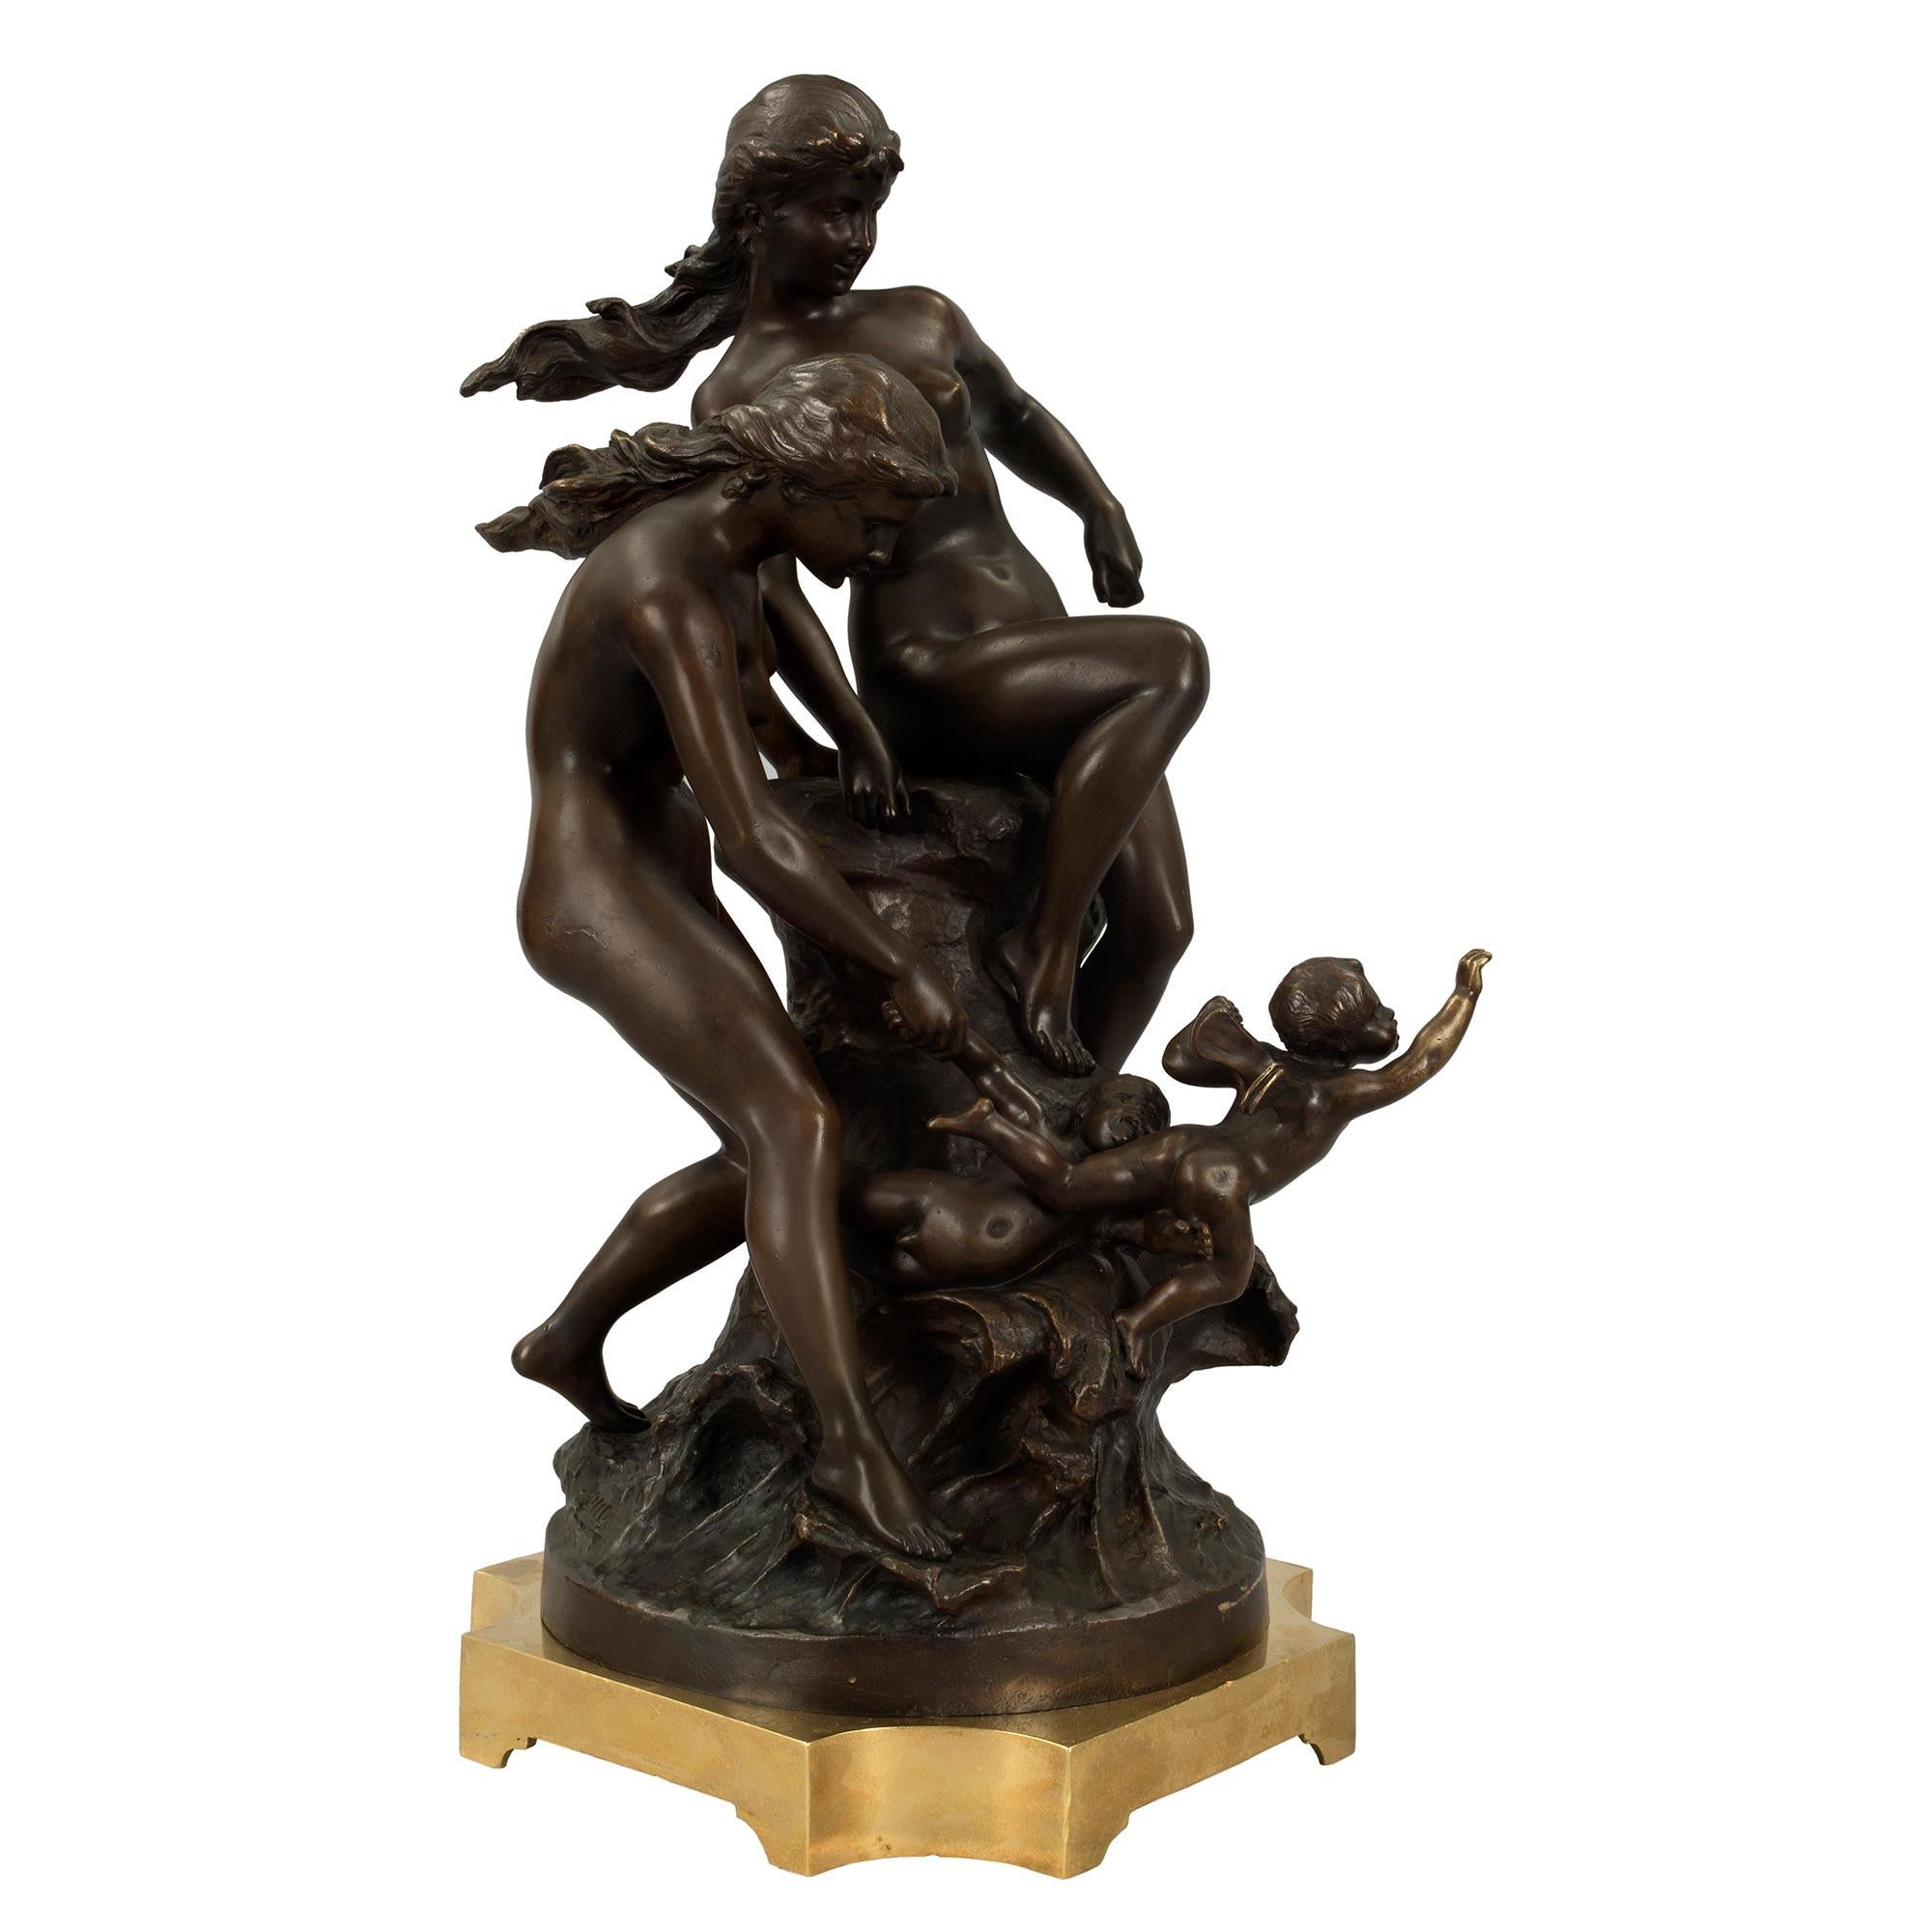 Magnifique bronze patiné de style Louis XVI du 19ème siècle. Le bronze repose sur une base carrée en bronze doré aux angles concaves. Deux baigneuses nues s'ébattent dans les vagues avec deux chérubins exubérants. Les cheveux des jeunes filles